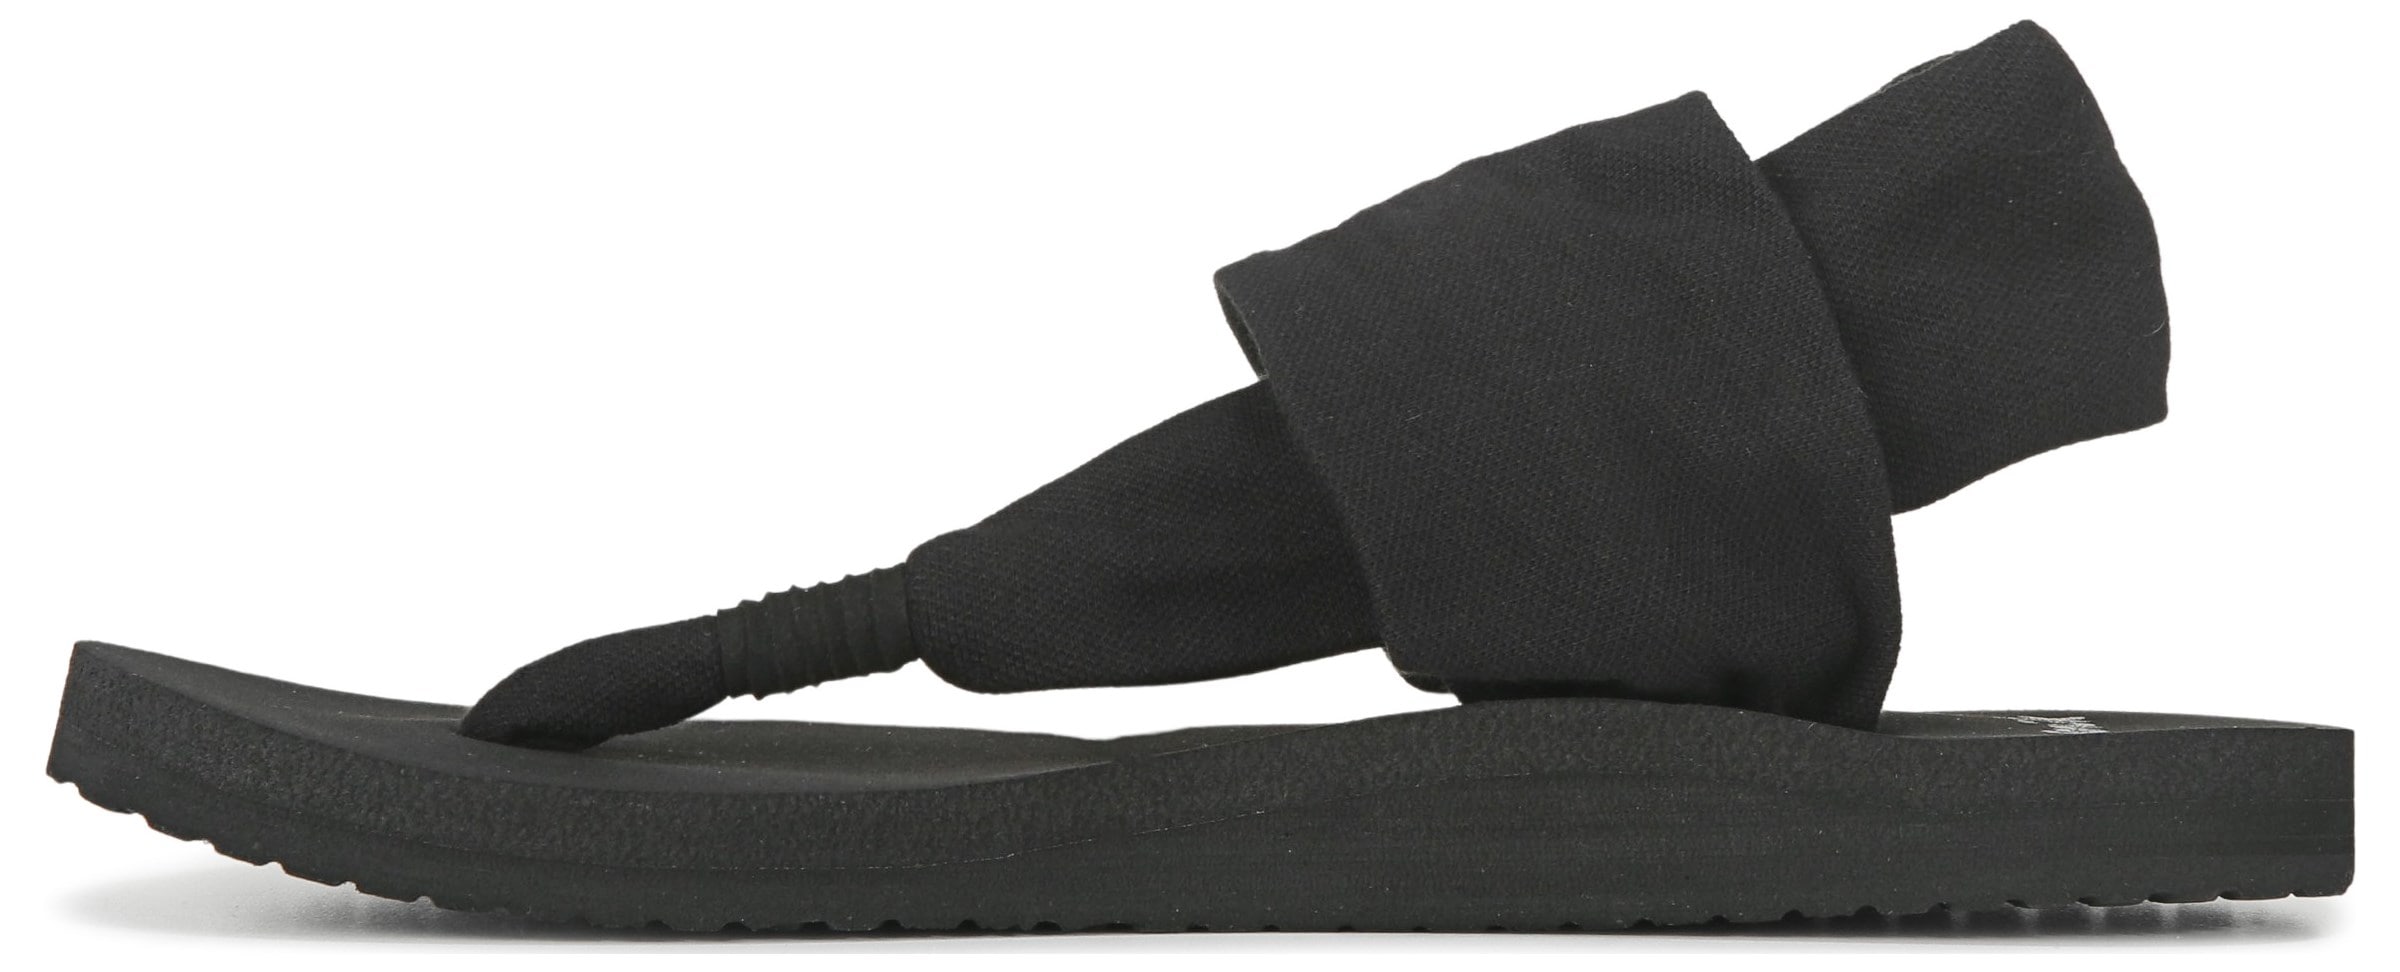 Chinelo Sandália Sanuk Yoga 39 Preto Importado Original Tamanho Lindo Super  Confortável, Sandália Feminina Sanuk Nunca Usado 59429485